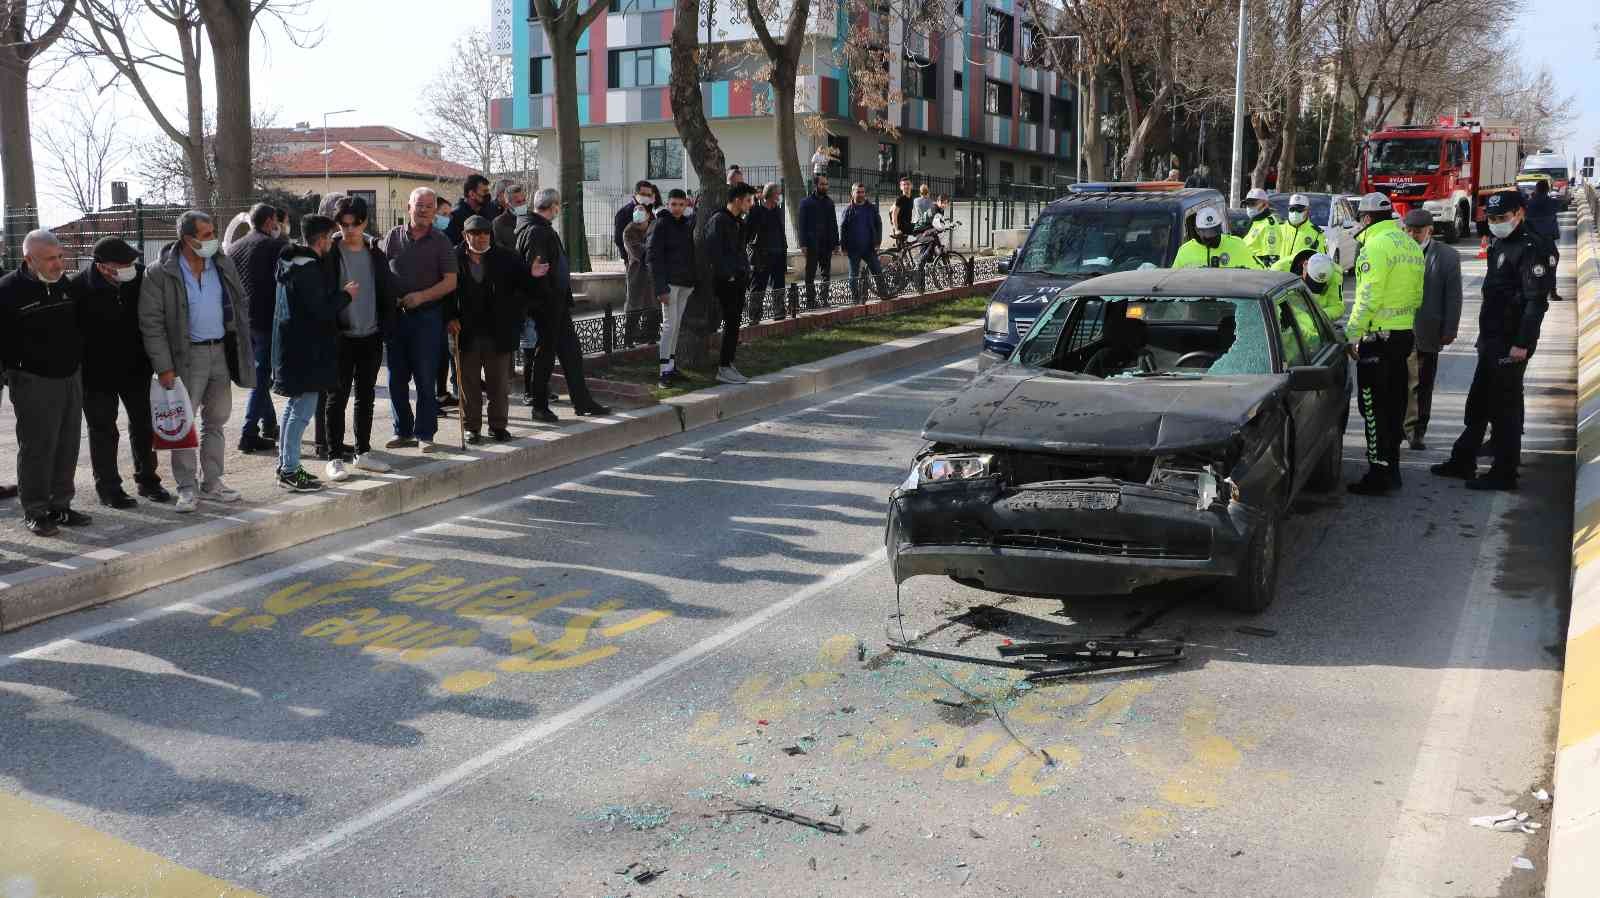 Edirne’de 2 kişinin yaralandığı kazayı vatandaşlar film gibi izledi #edirne